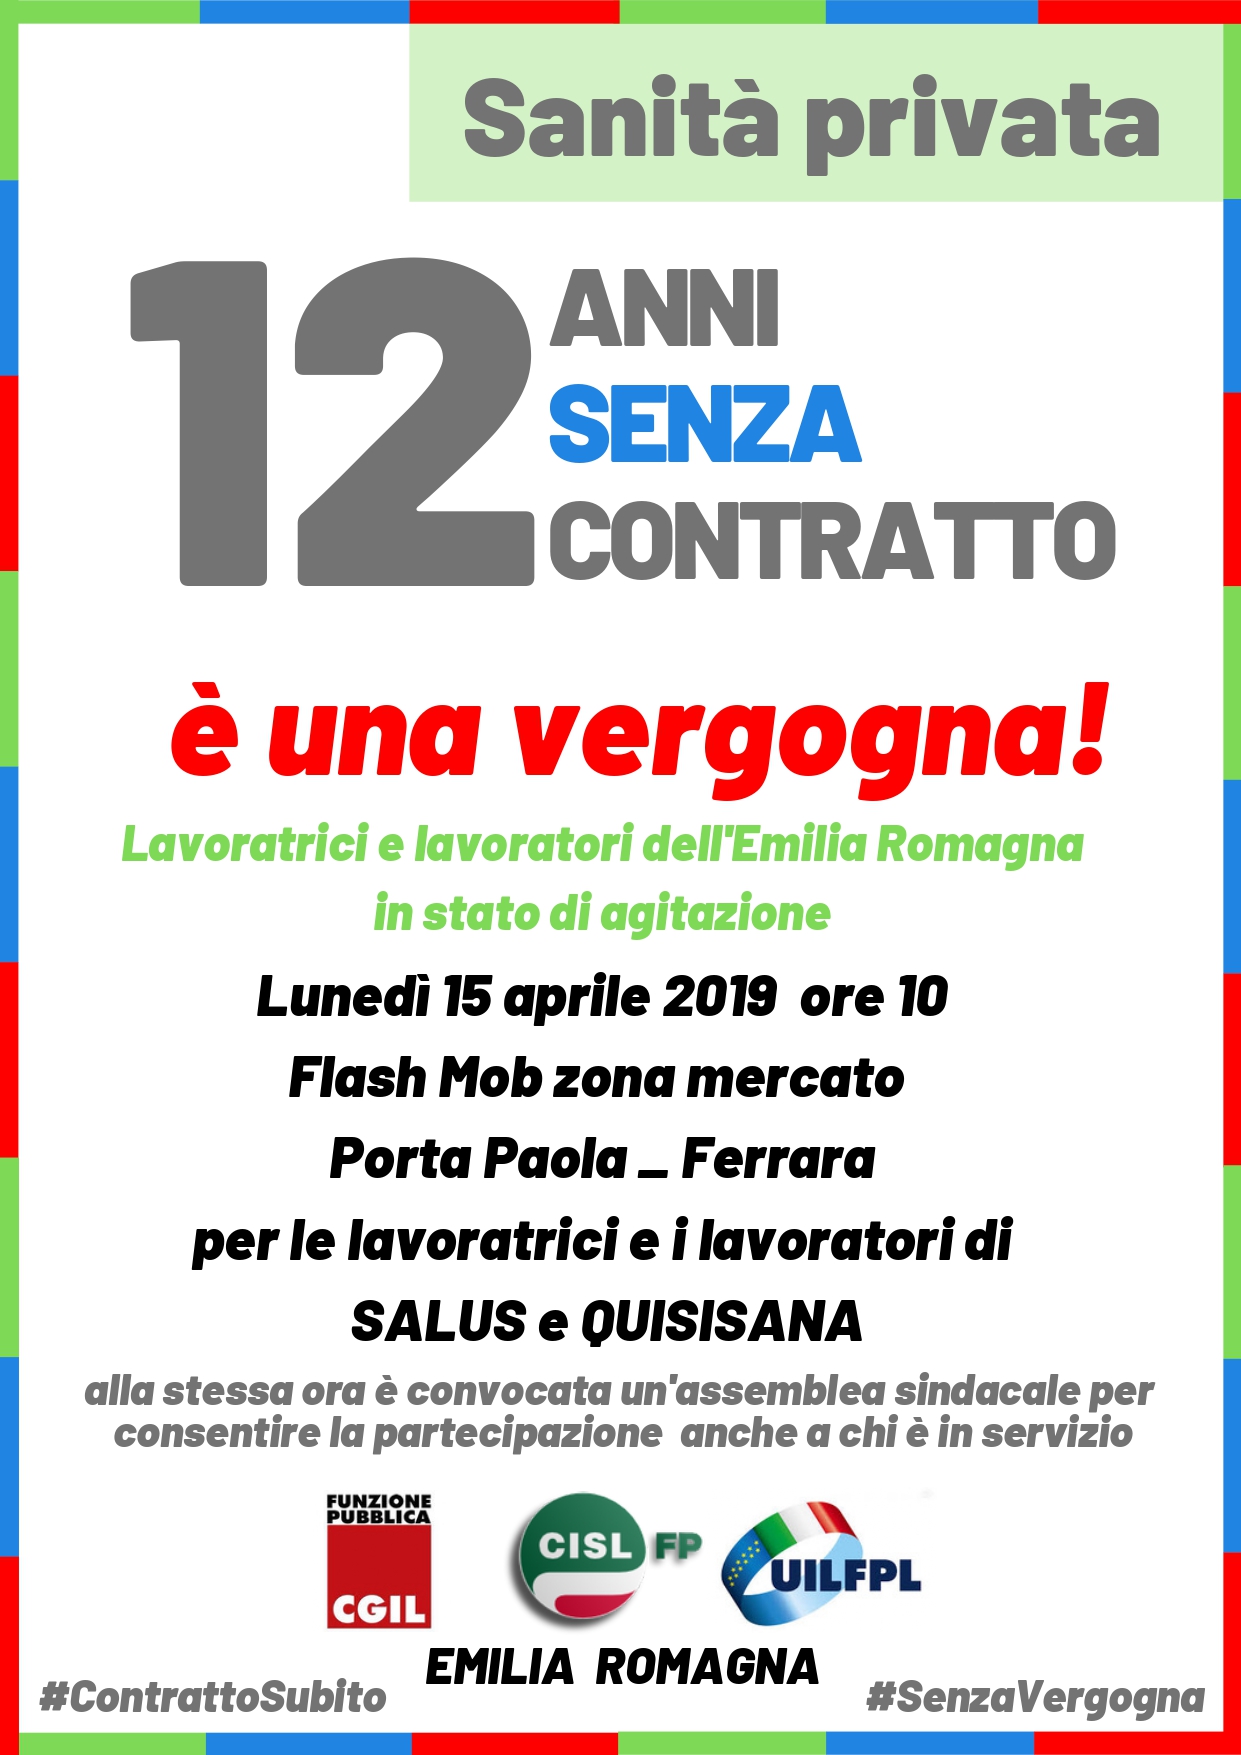 12 anni senza contratto: flash mob per la sanità privata a Ferrara lunedì 15 aprile